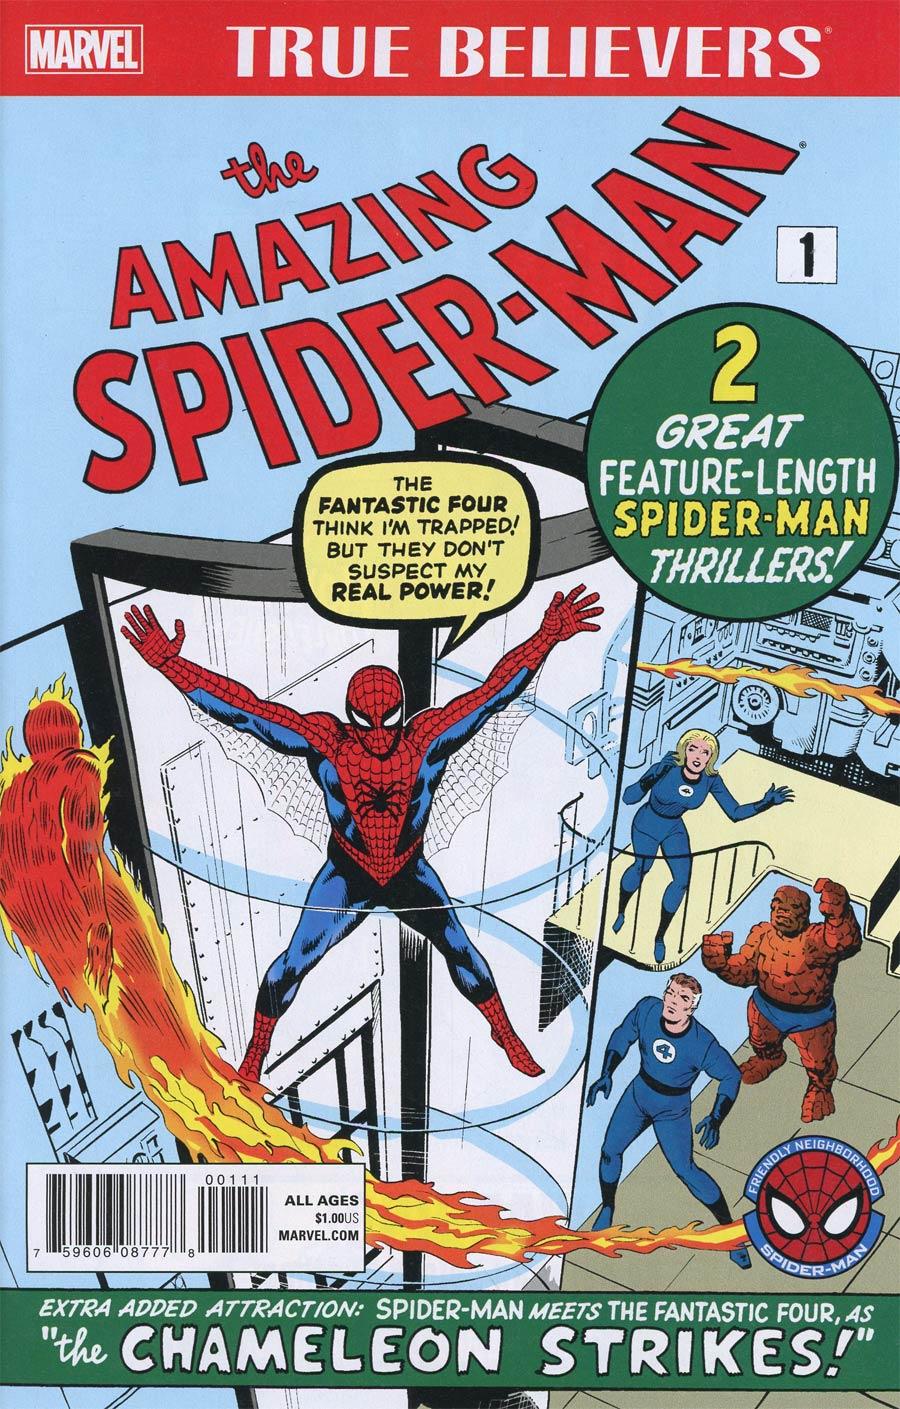 True Believers Amazing Spider-Man Vol. 1 #1